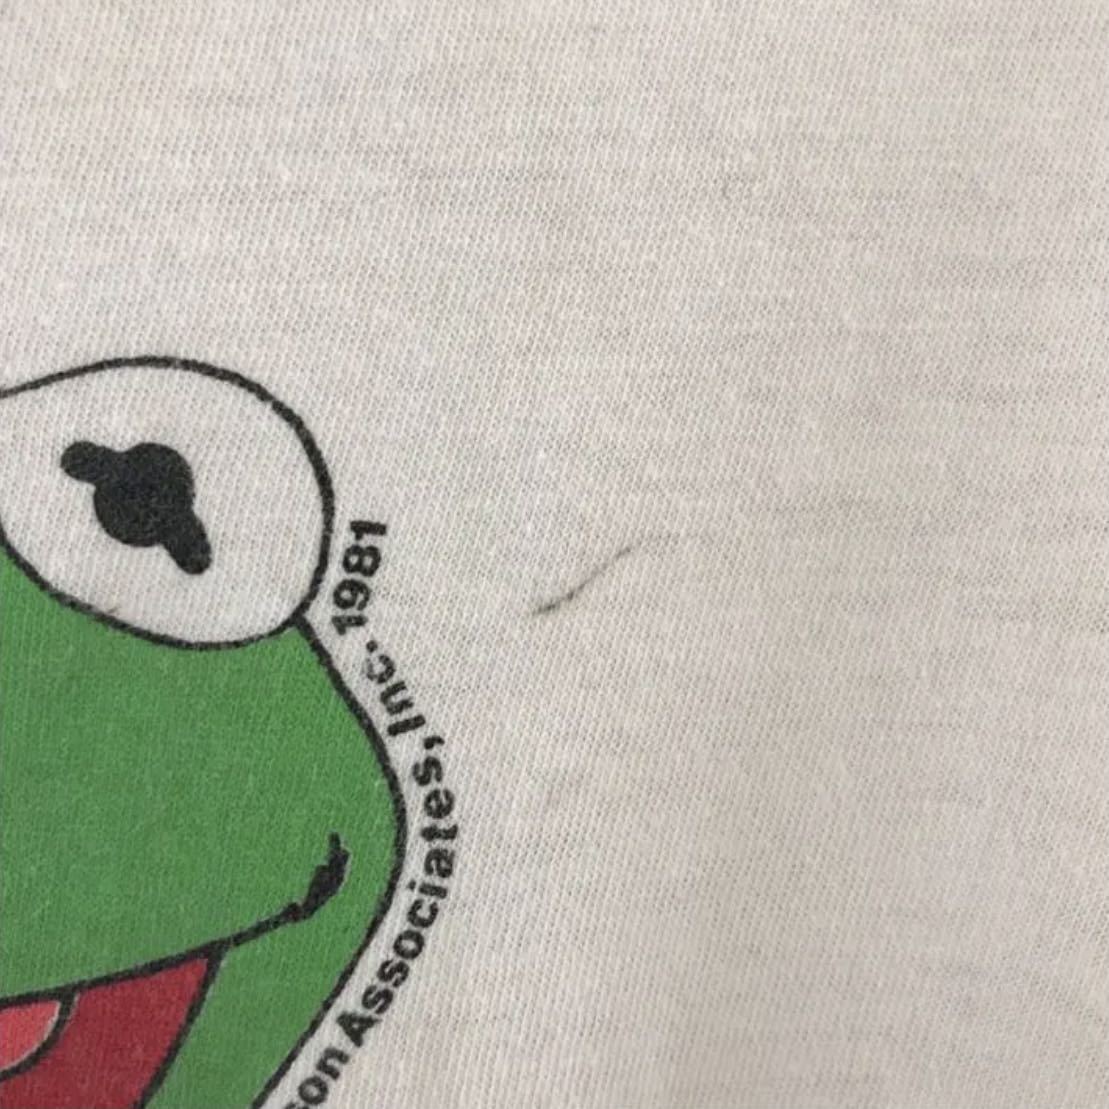 80 S ビンテージ カーミット Tシャツ M セサミストリート Kermit イラスト キャラクター 売買されたオークション情報 Yahooの商品情報をアーカイブ公開 オークファン Aucfan Com